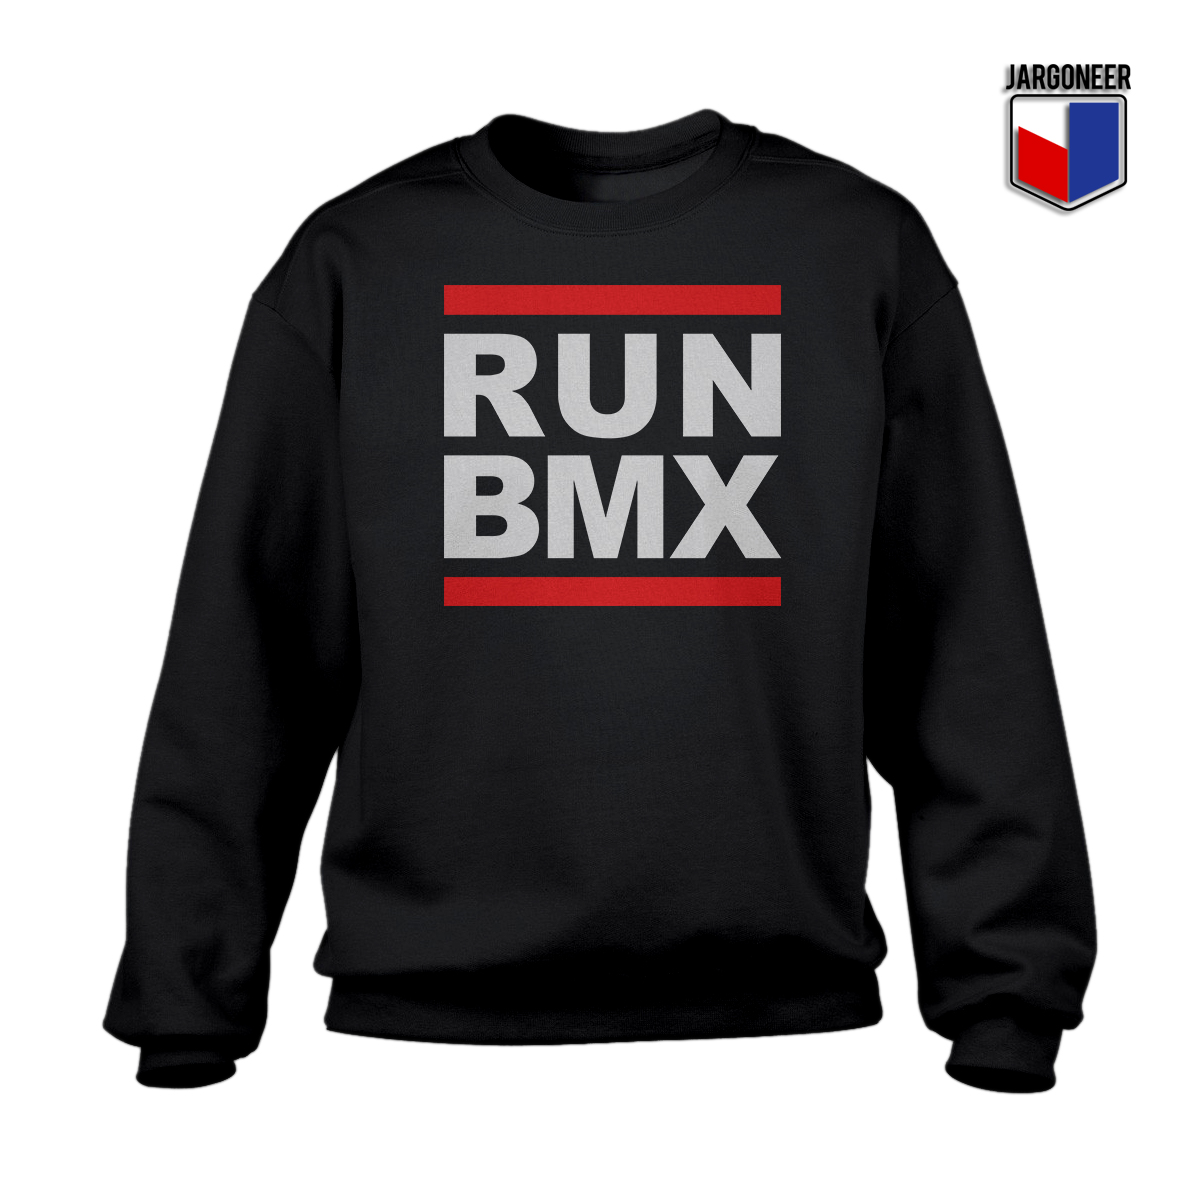 Run BMX Black SS - Shop Unique Graphic Cool Shirt Designs